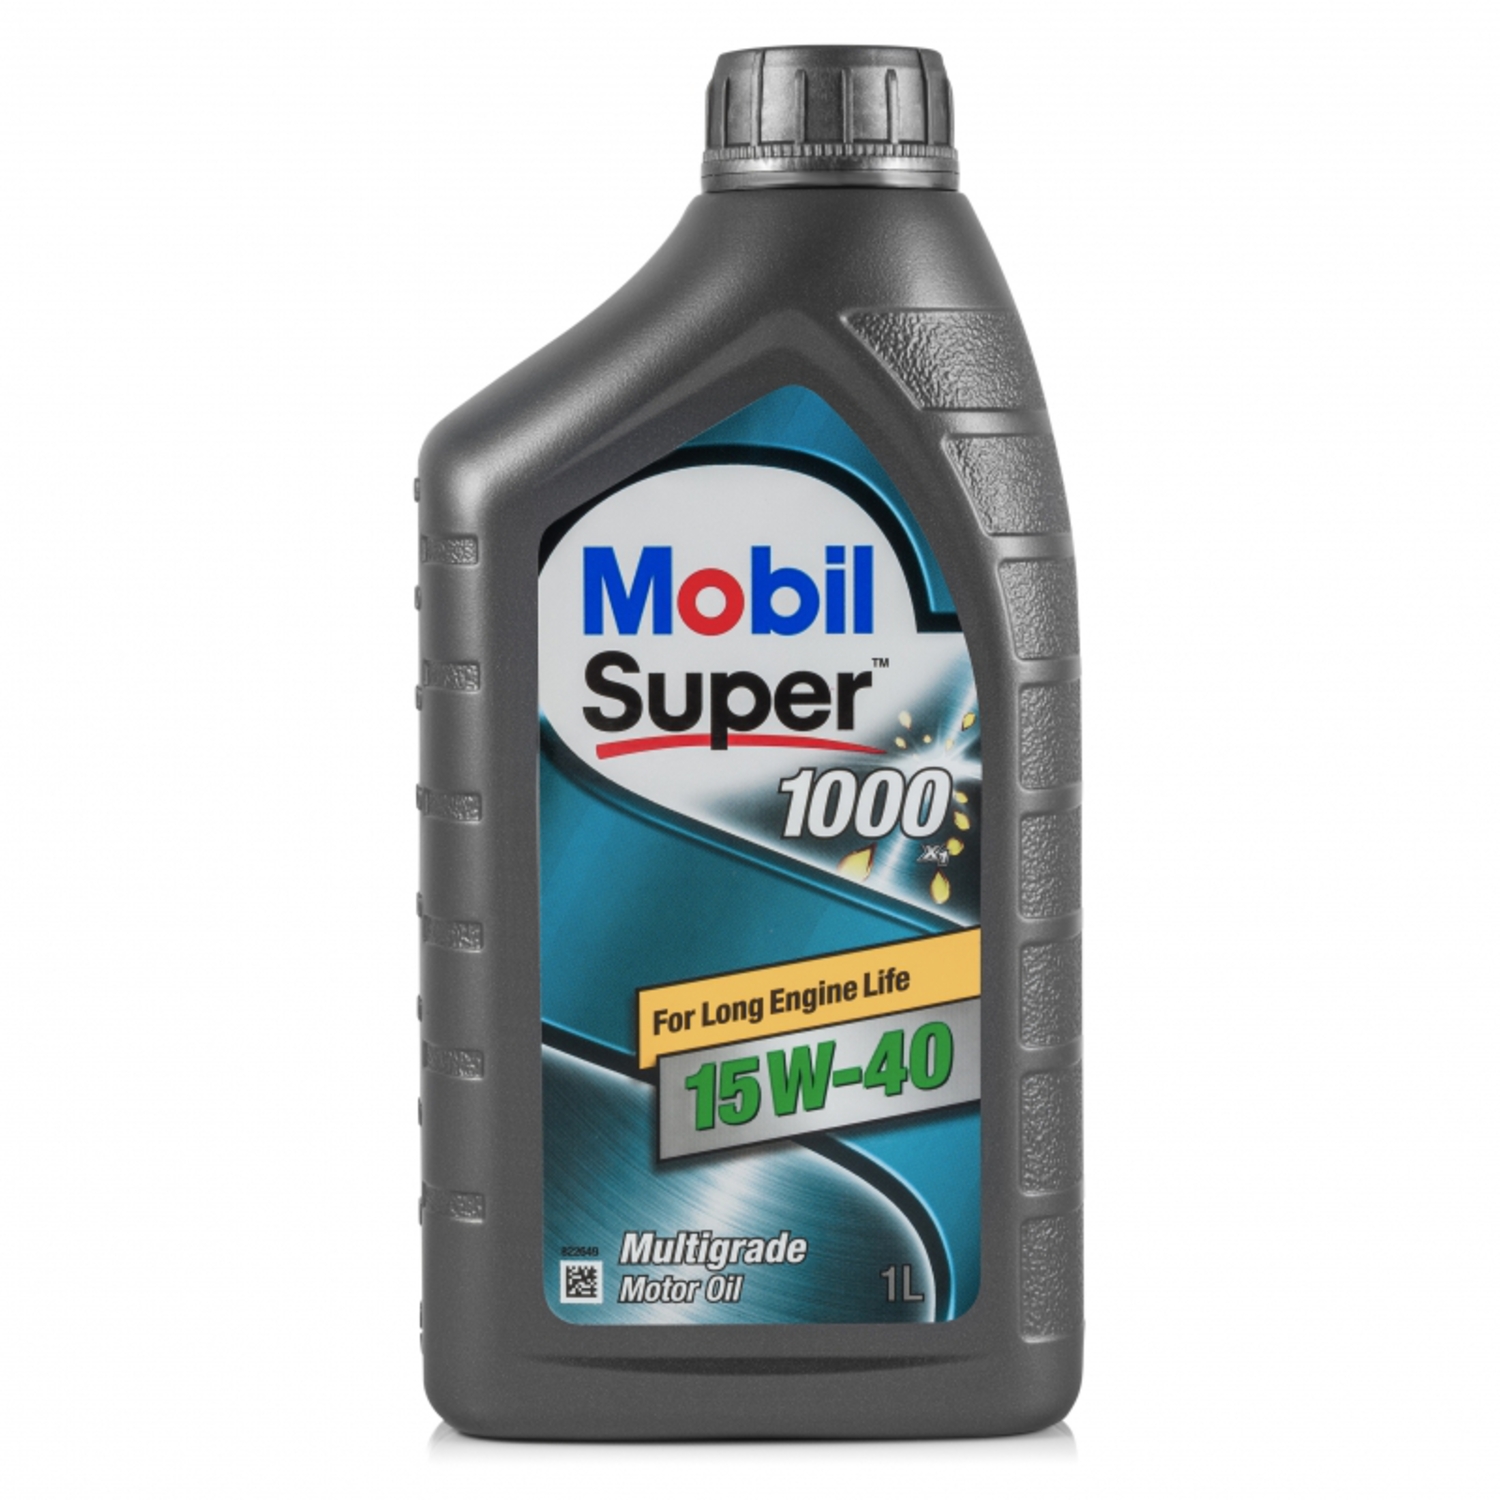 MOBIL SUPER 1000-1L Масло авто моторн.   15W40 SUPER M (super 1000)   1L  Минерал.